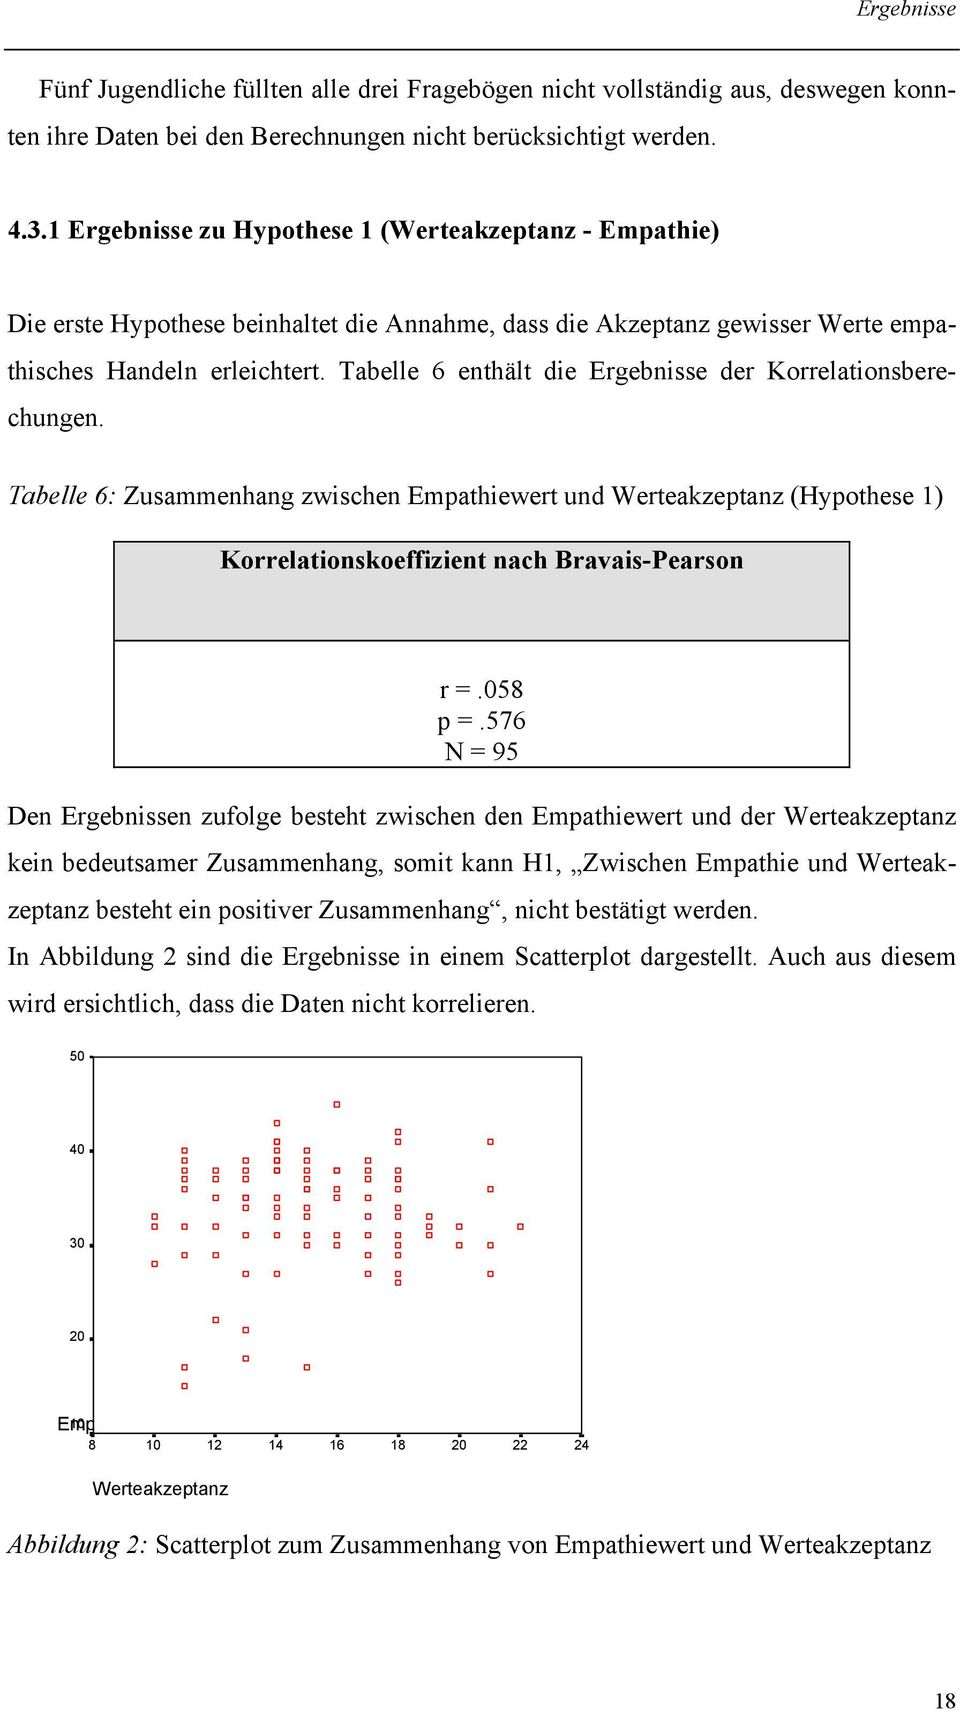 Tabelle 6 enthält die Ergebnisse der Korrelationsberechungen. Tabelle 6: Zusammenhang zwischen Empathiewert und Werteakzeptanz (Hypothese 1) Korrelationskoeffizient nach Bravais-Pearson r =.058 p =.